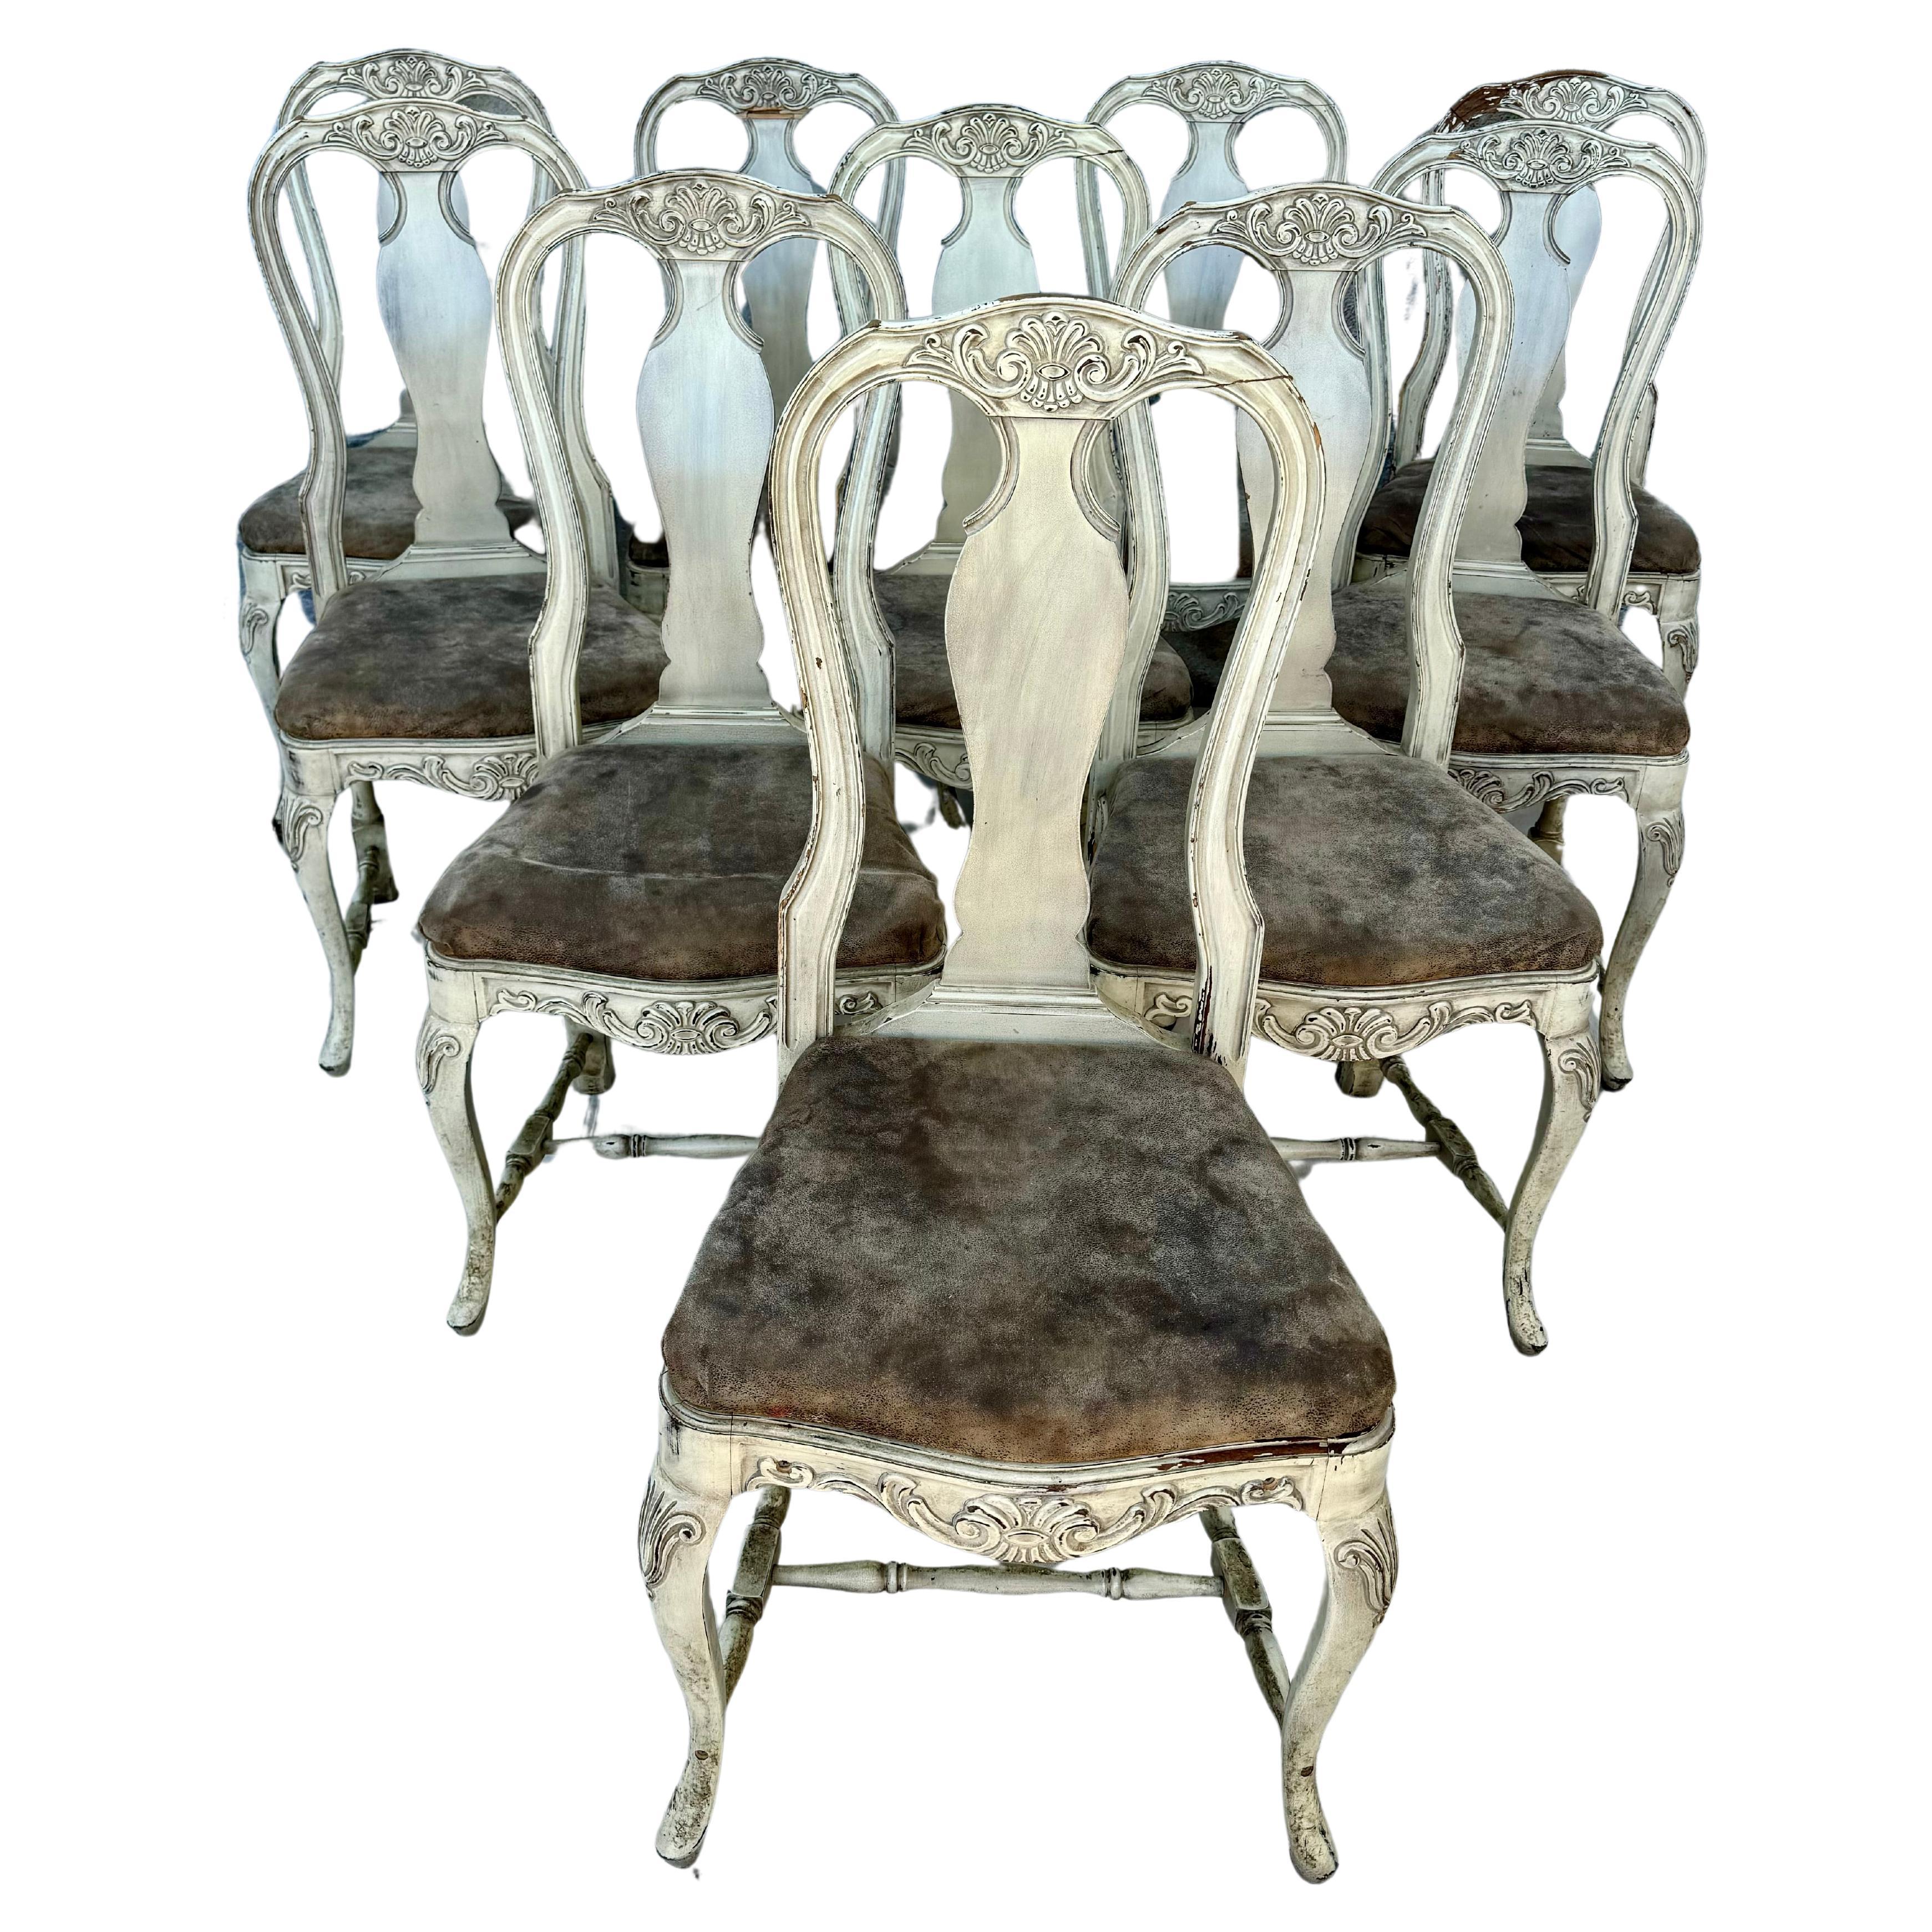 Bel ensemble de dix (10) chaises de salle à manger de style rococo suédois du milieu du 20e siècle. Les chaises sont ornées de détails sculptés, de dossiers galbés et de pieds en cabriolet. Les sièges sont recouverts de cuir marron. Chaque chaise